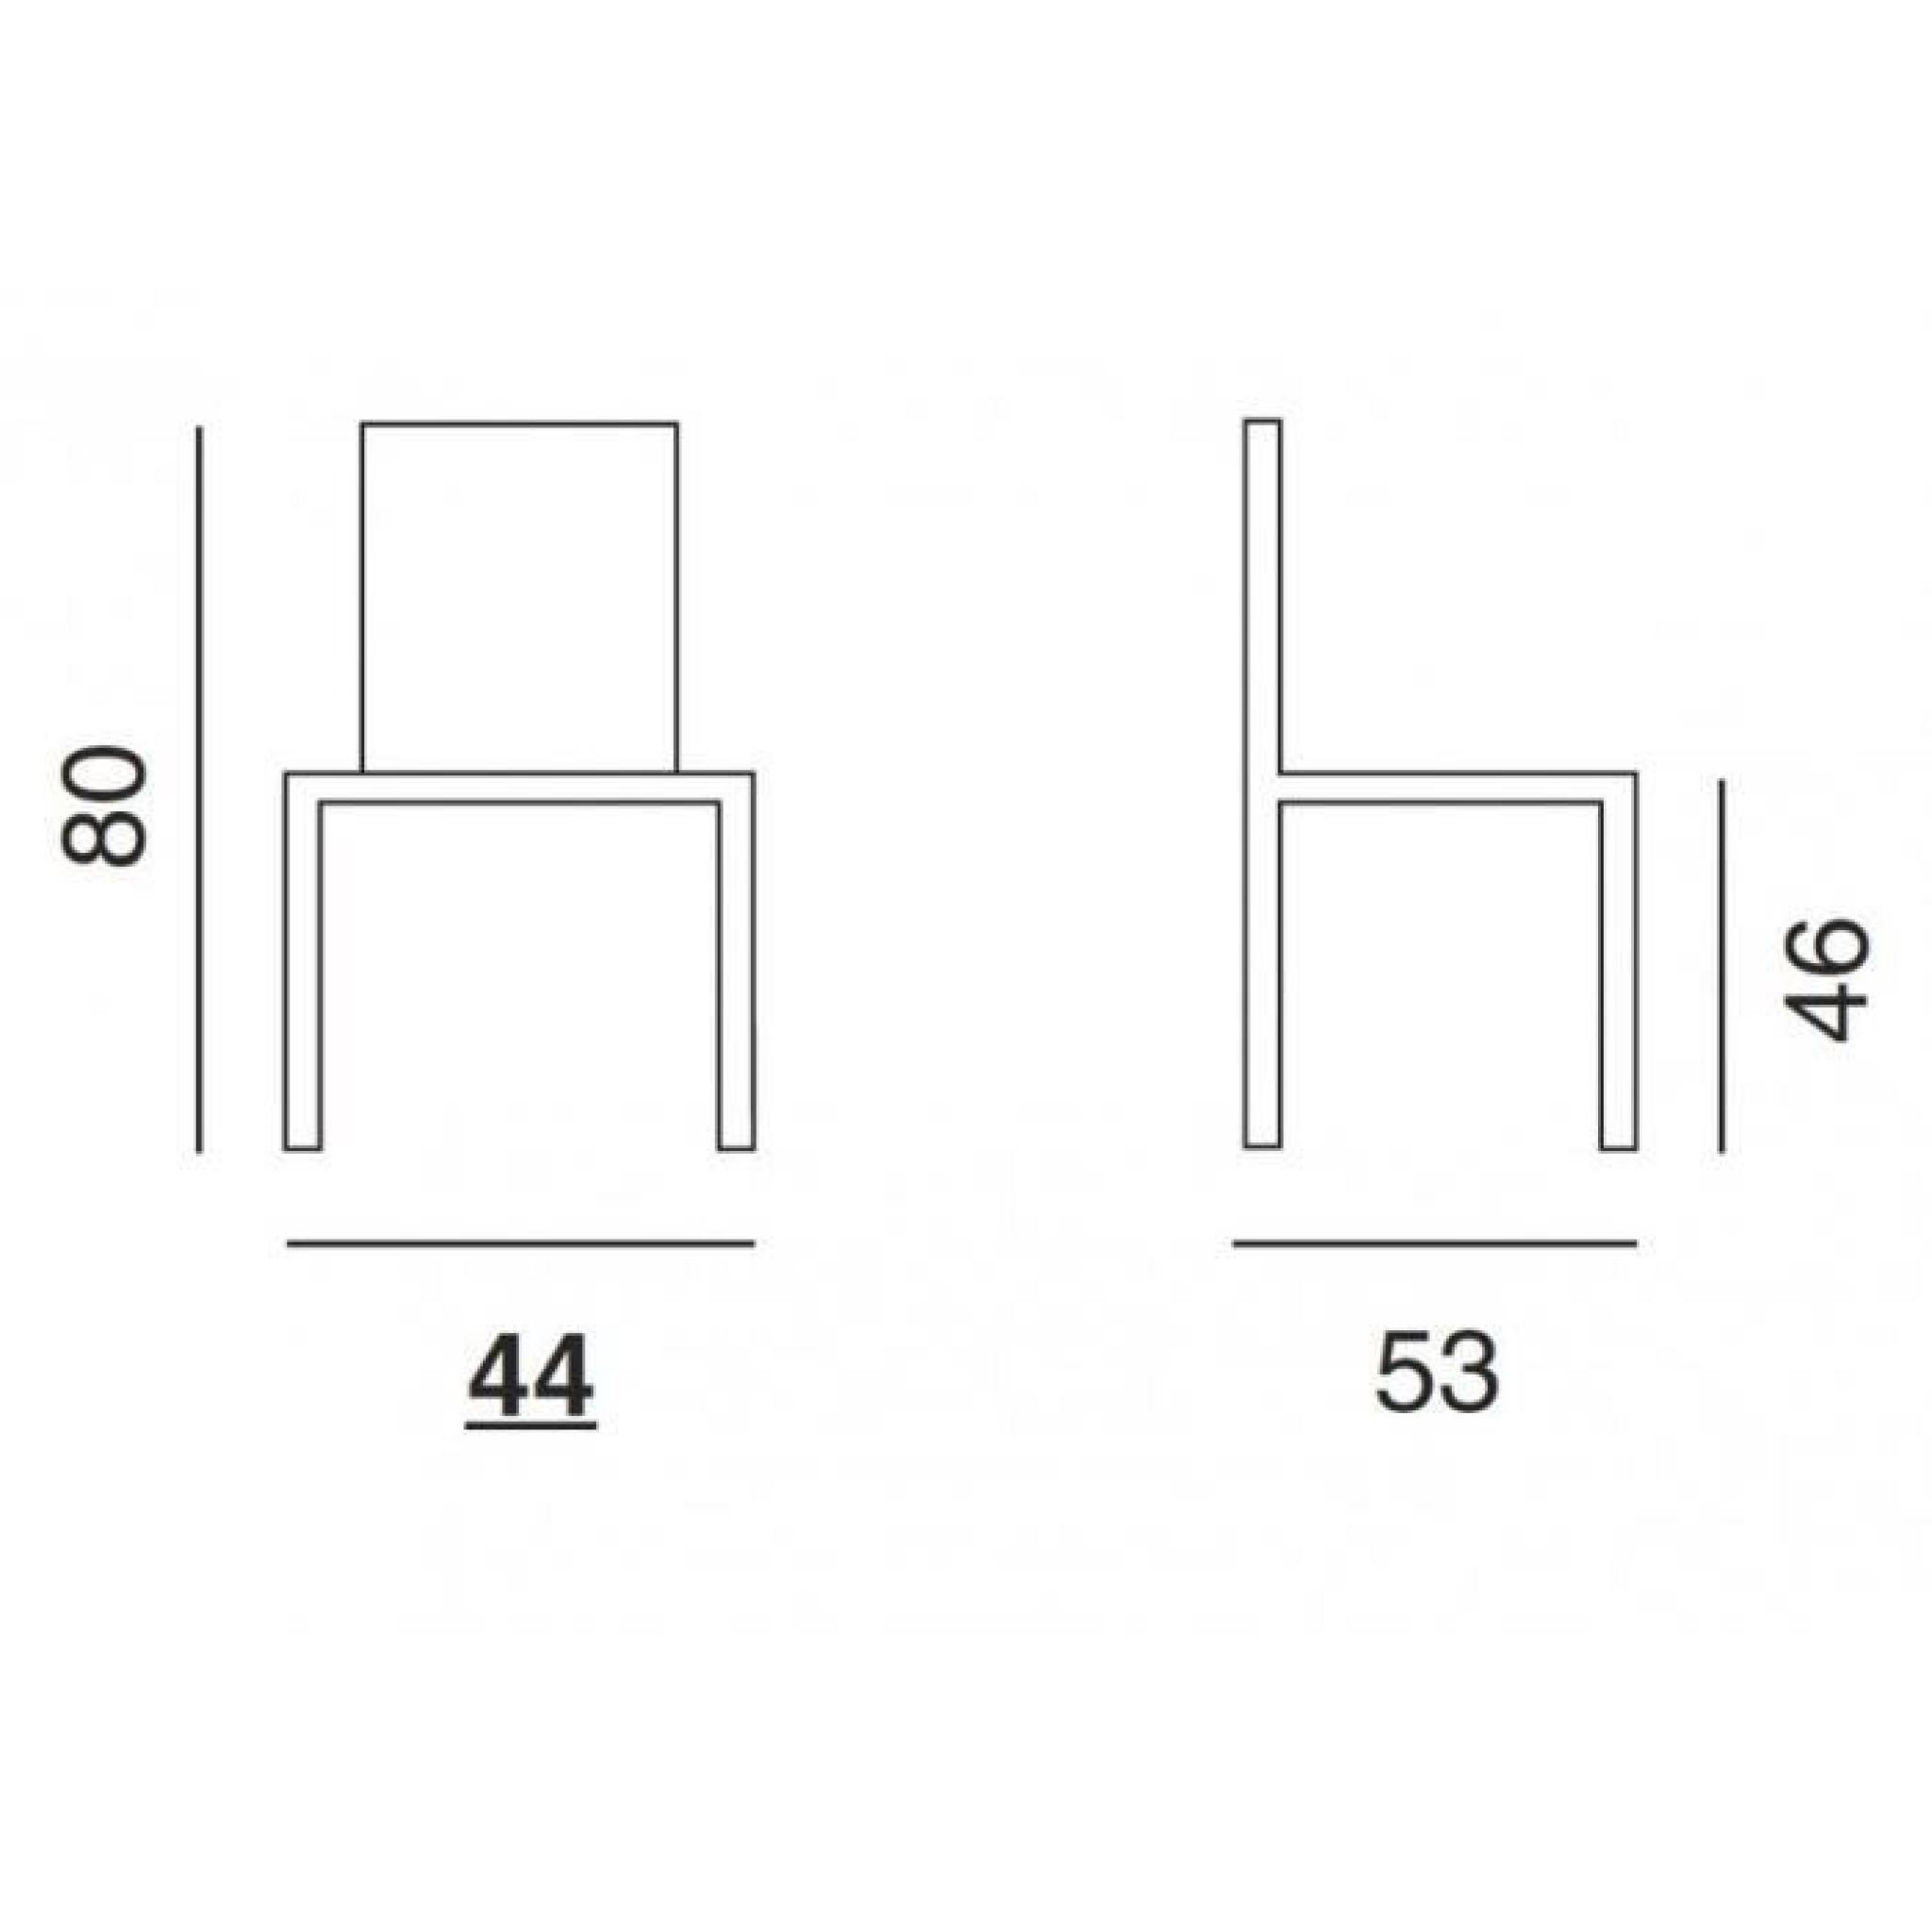 Chaise design ORBITAL WOOD plexiglas blanc et h... pas cher